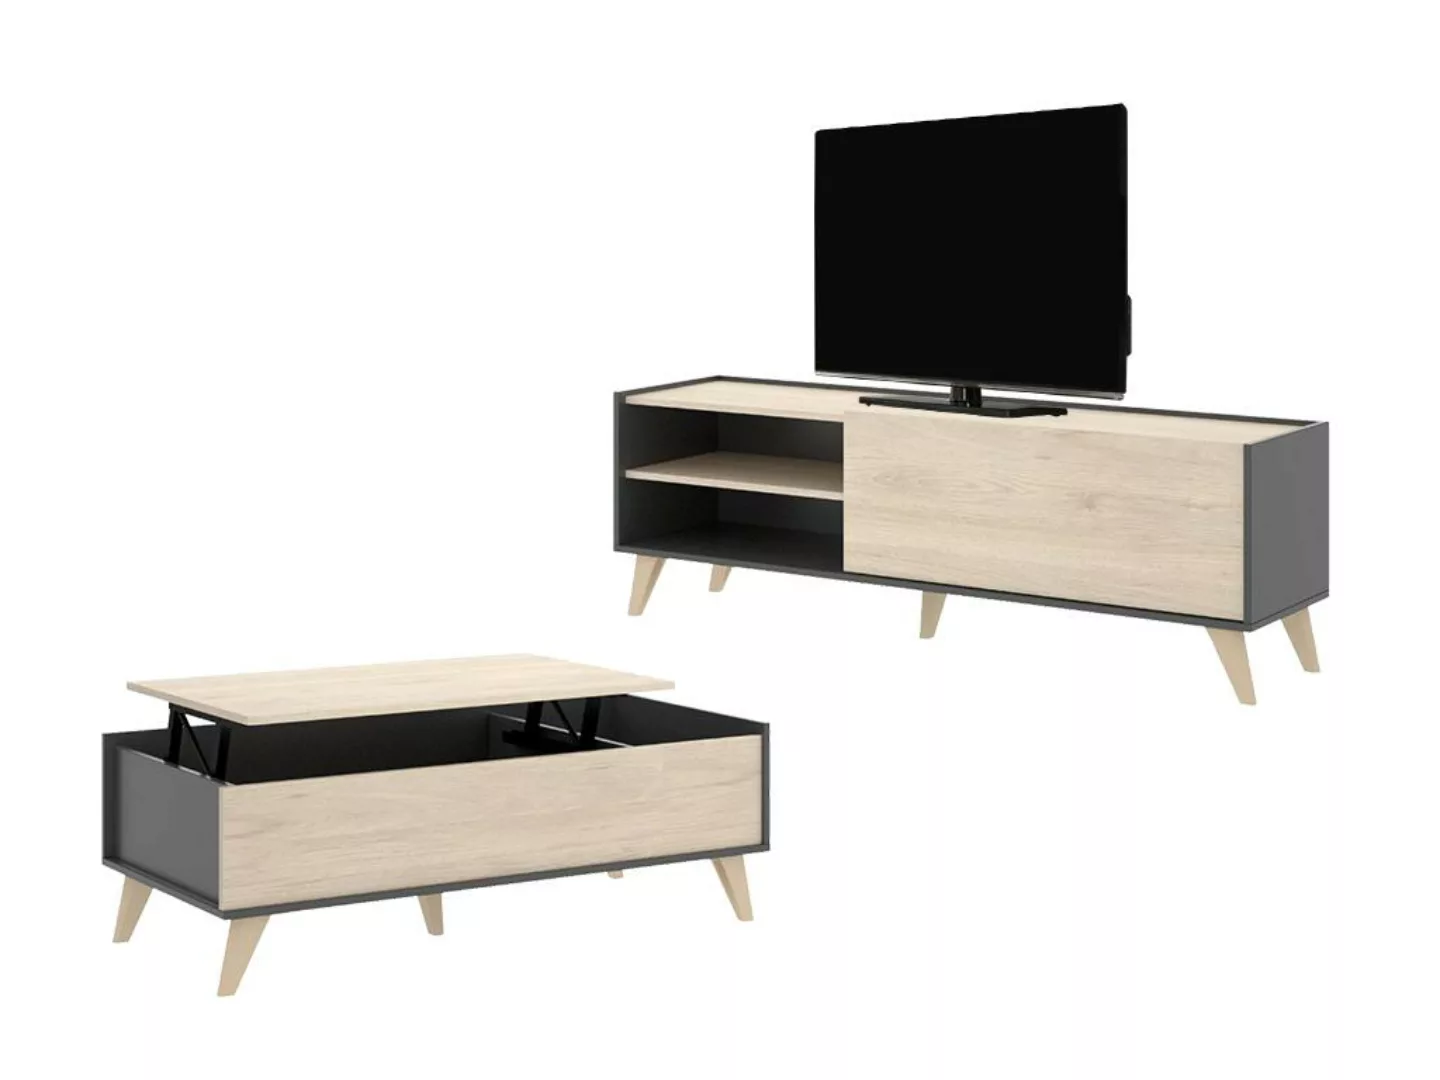 Sparset: Couchtisch + TV-Möbel - Anthrazit & Eichefarben - KOLYMA günstig online kaufen